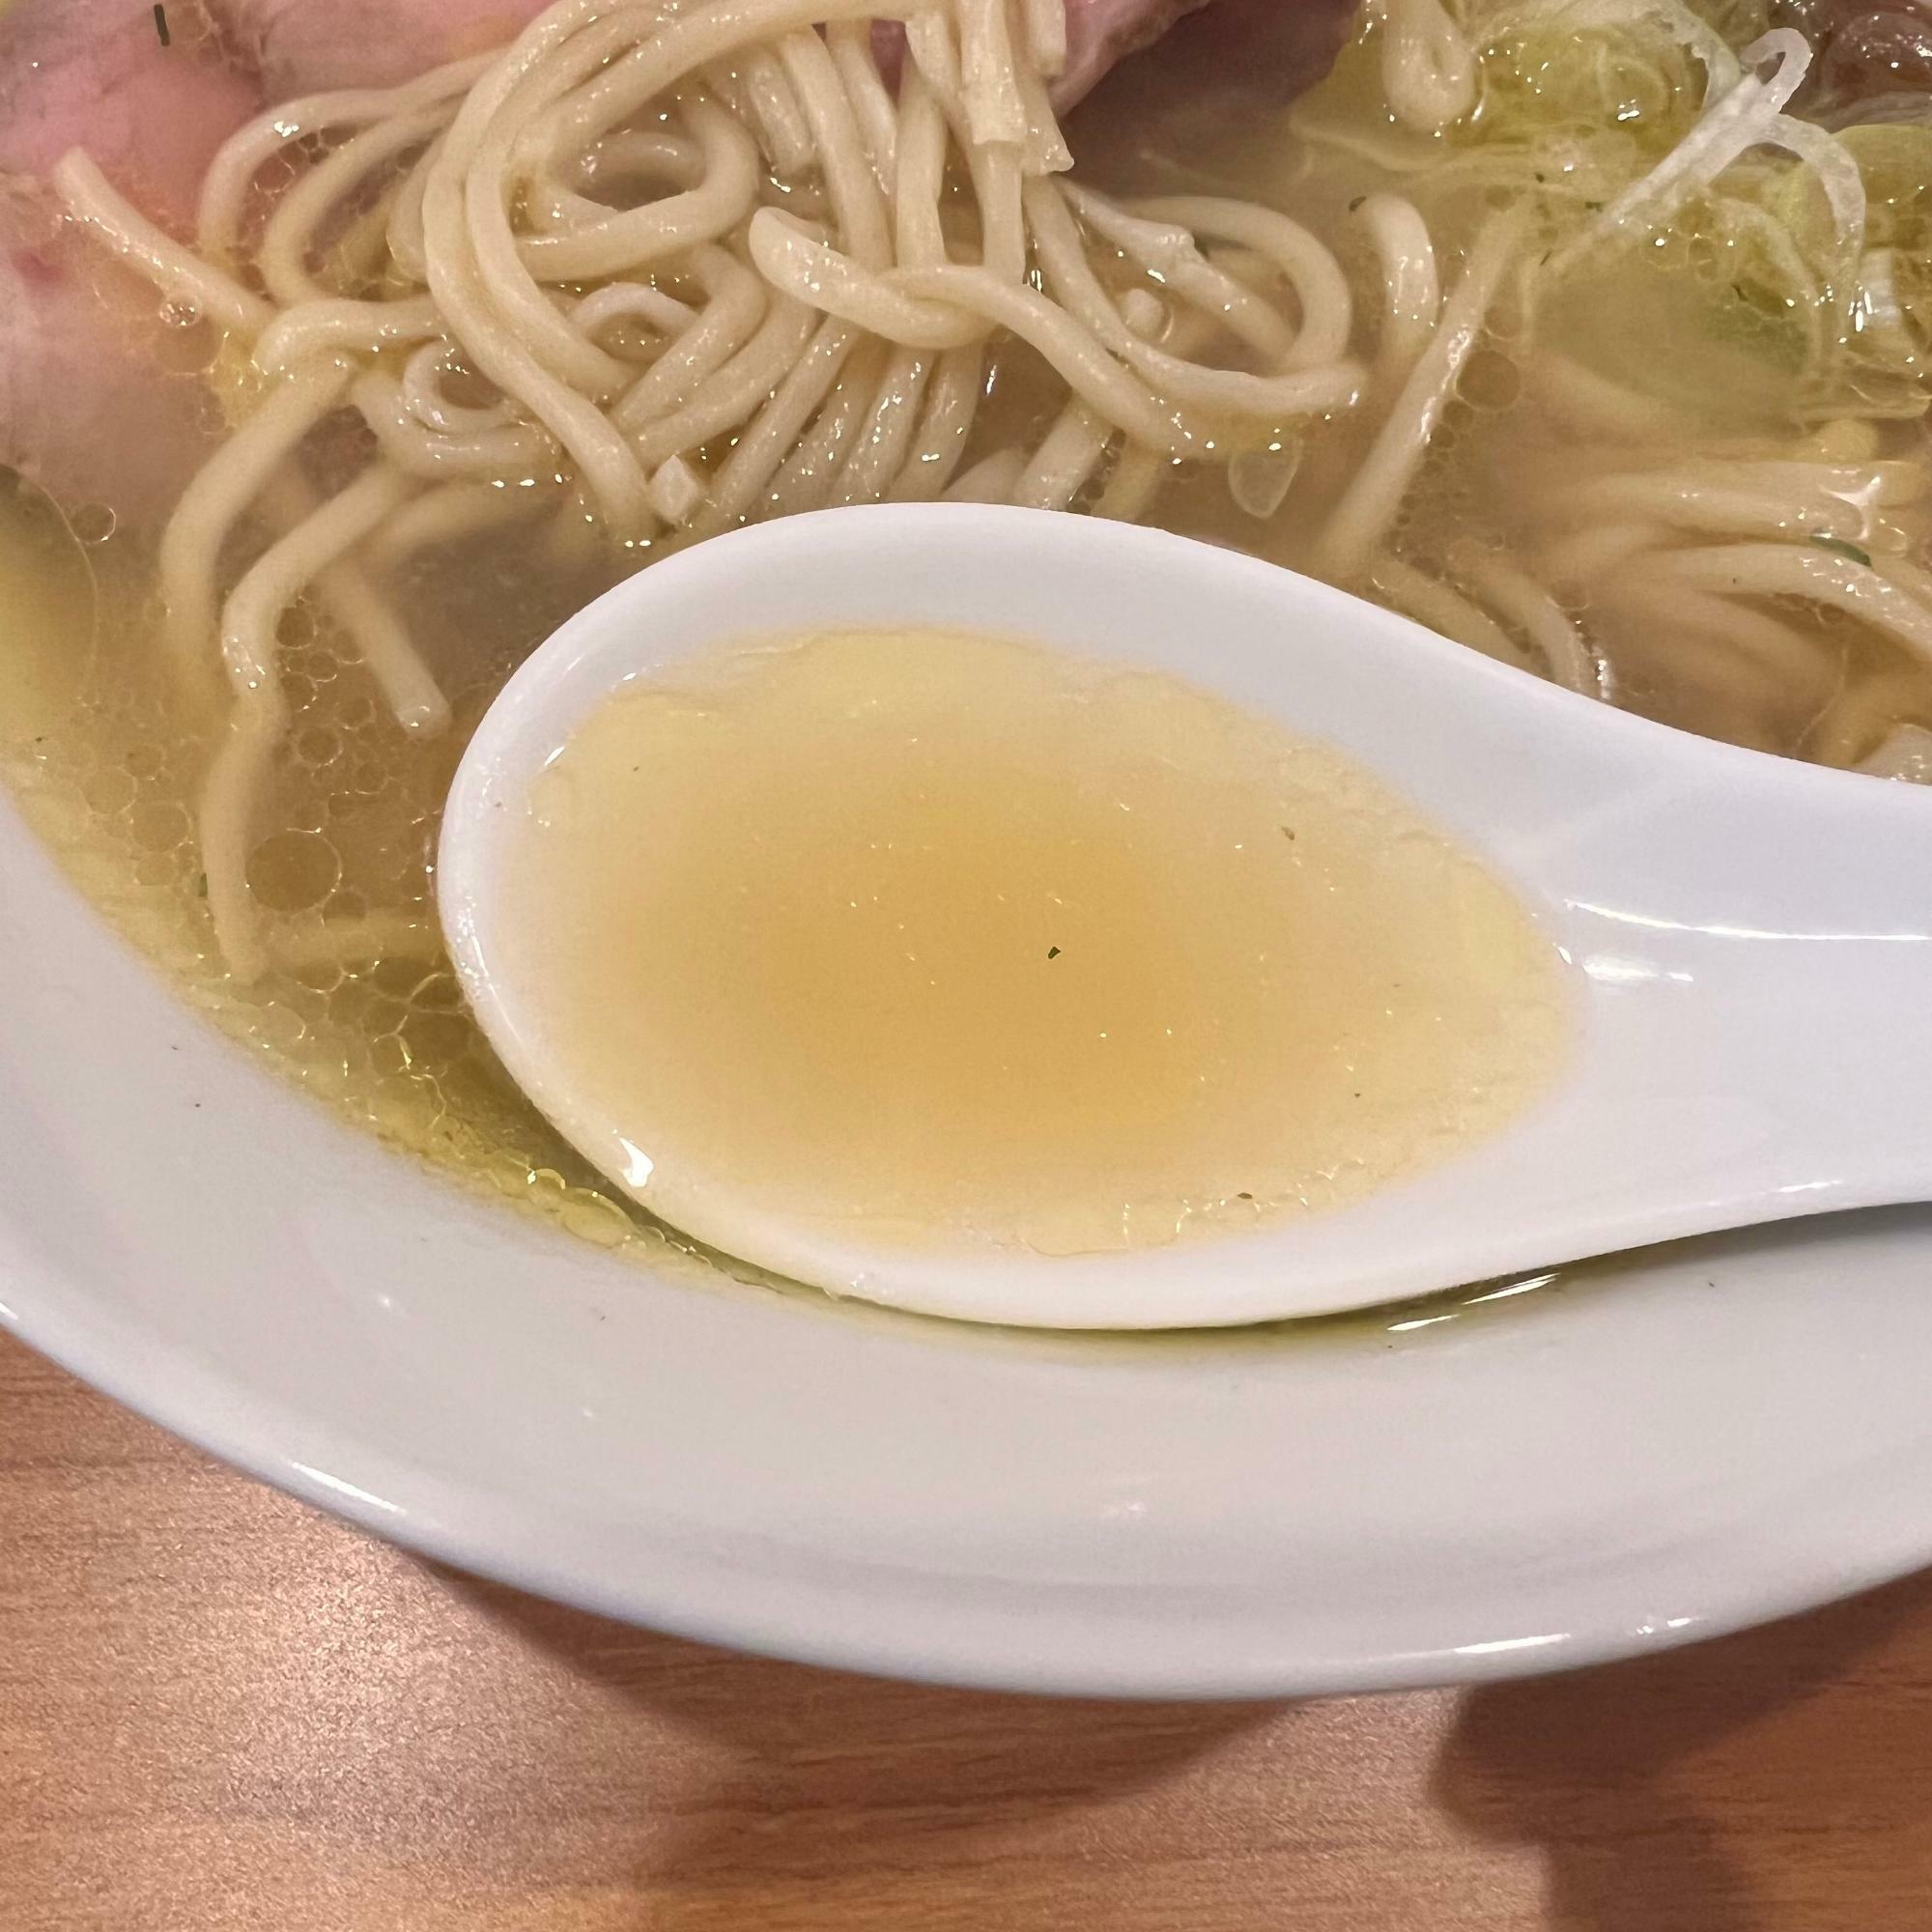 スープは無化調となっており透き通ったタイプです。